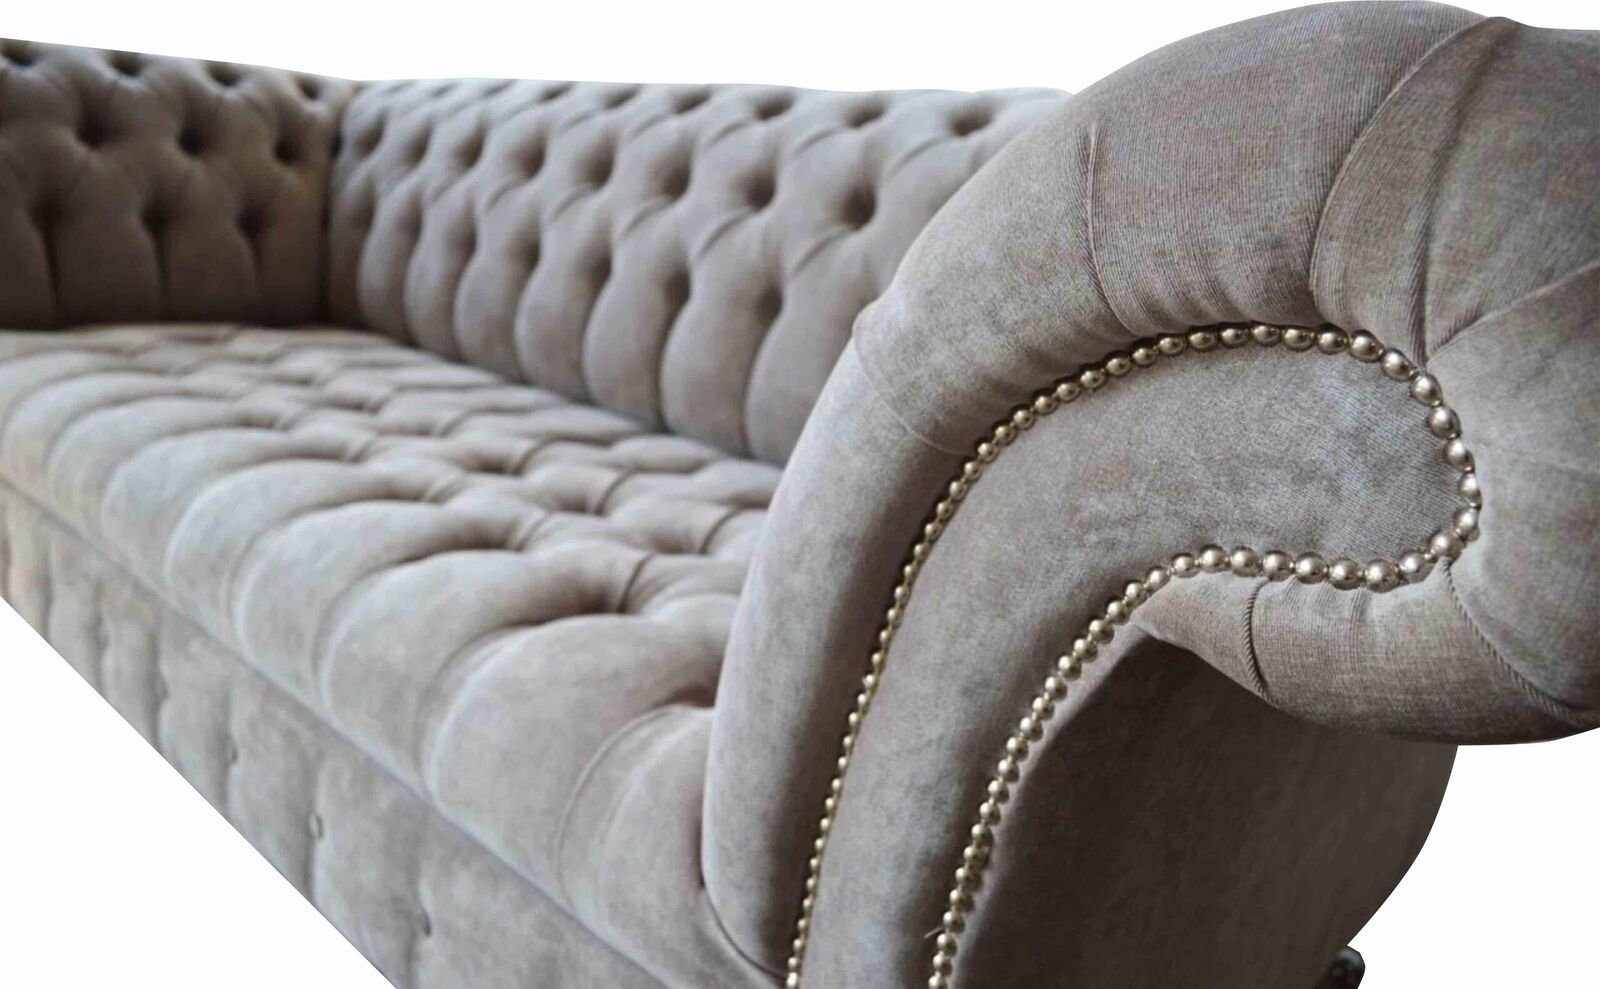 Couch JVmoebel Sofa Teile, Europe Grau Sitzpolster Dreisitzer Couchen Sofa 1 In Chesterfield Möbel Made Neu,